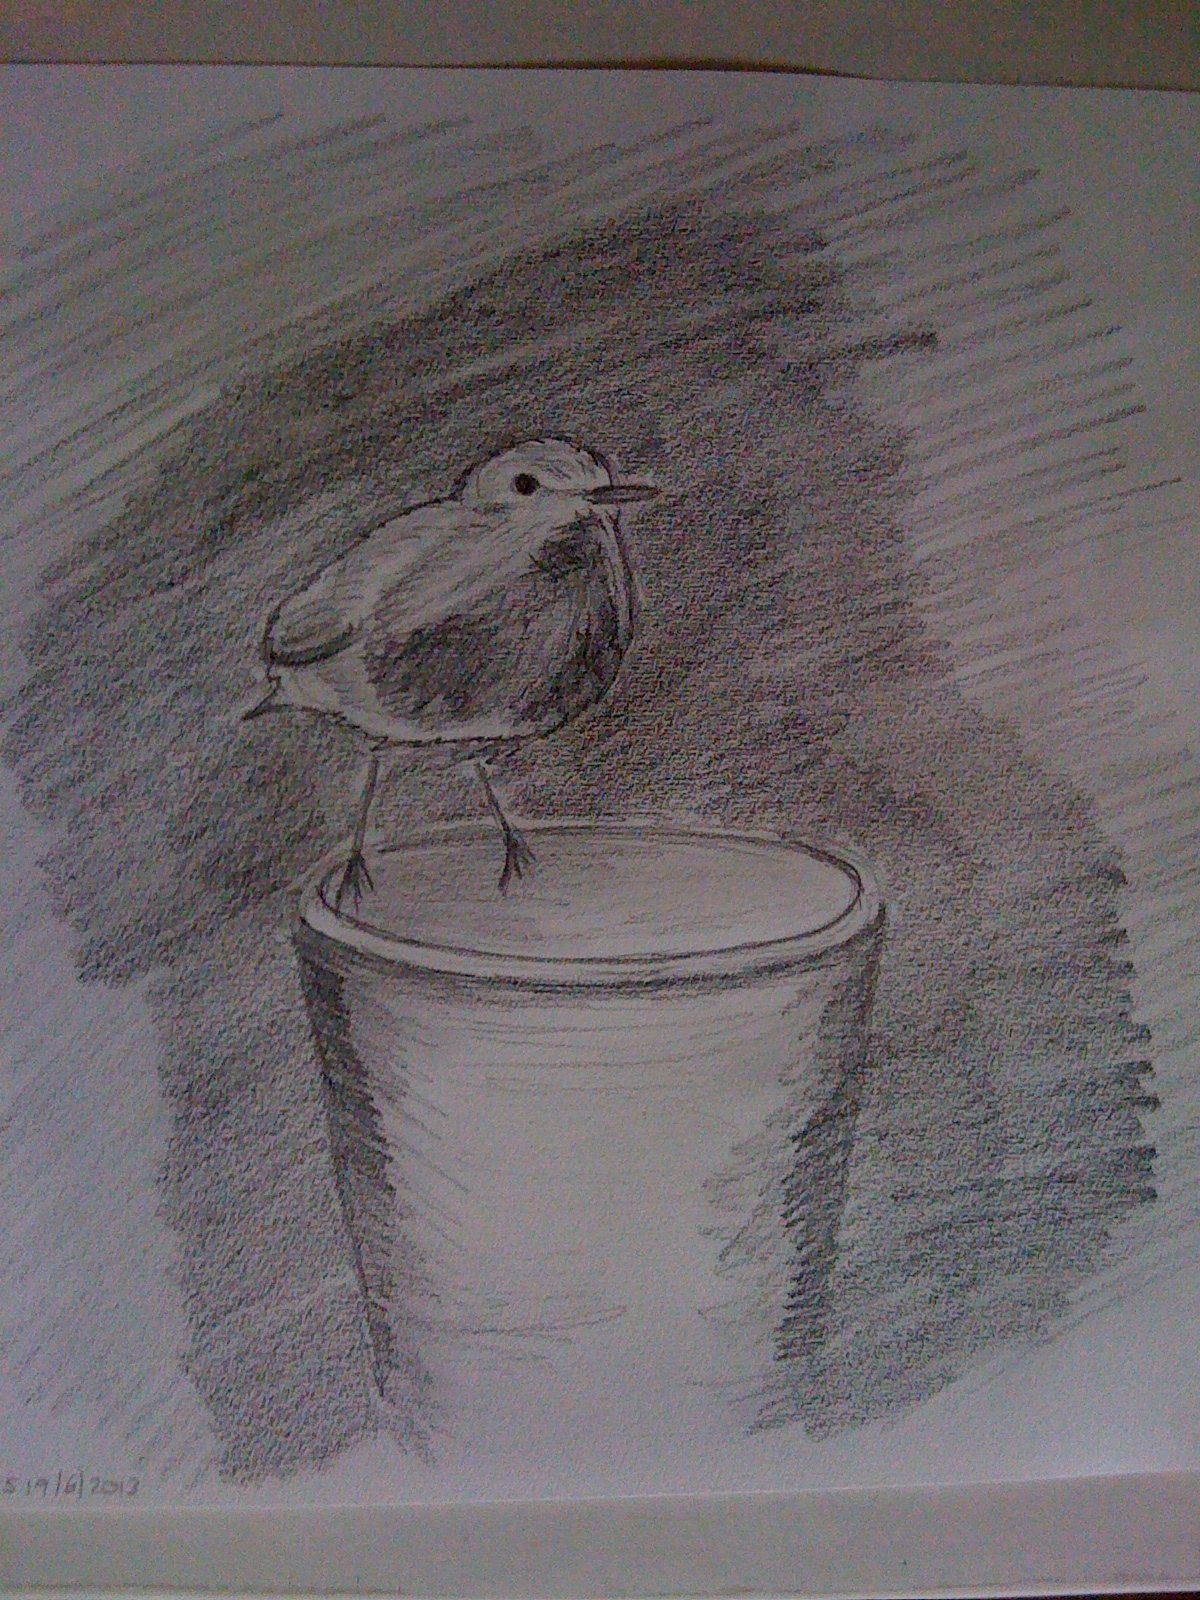 Robin on flower pot